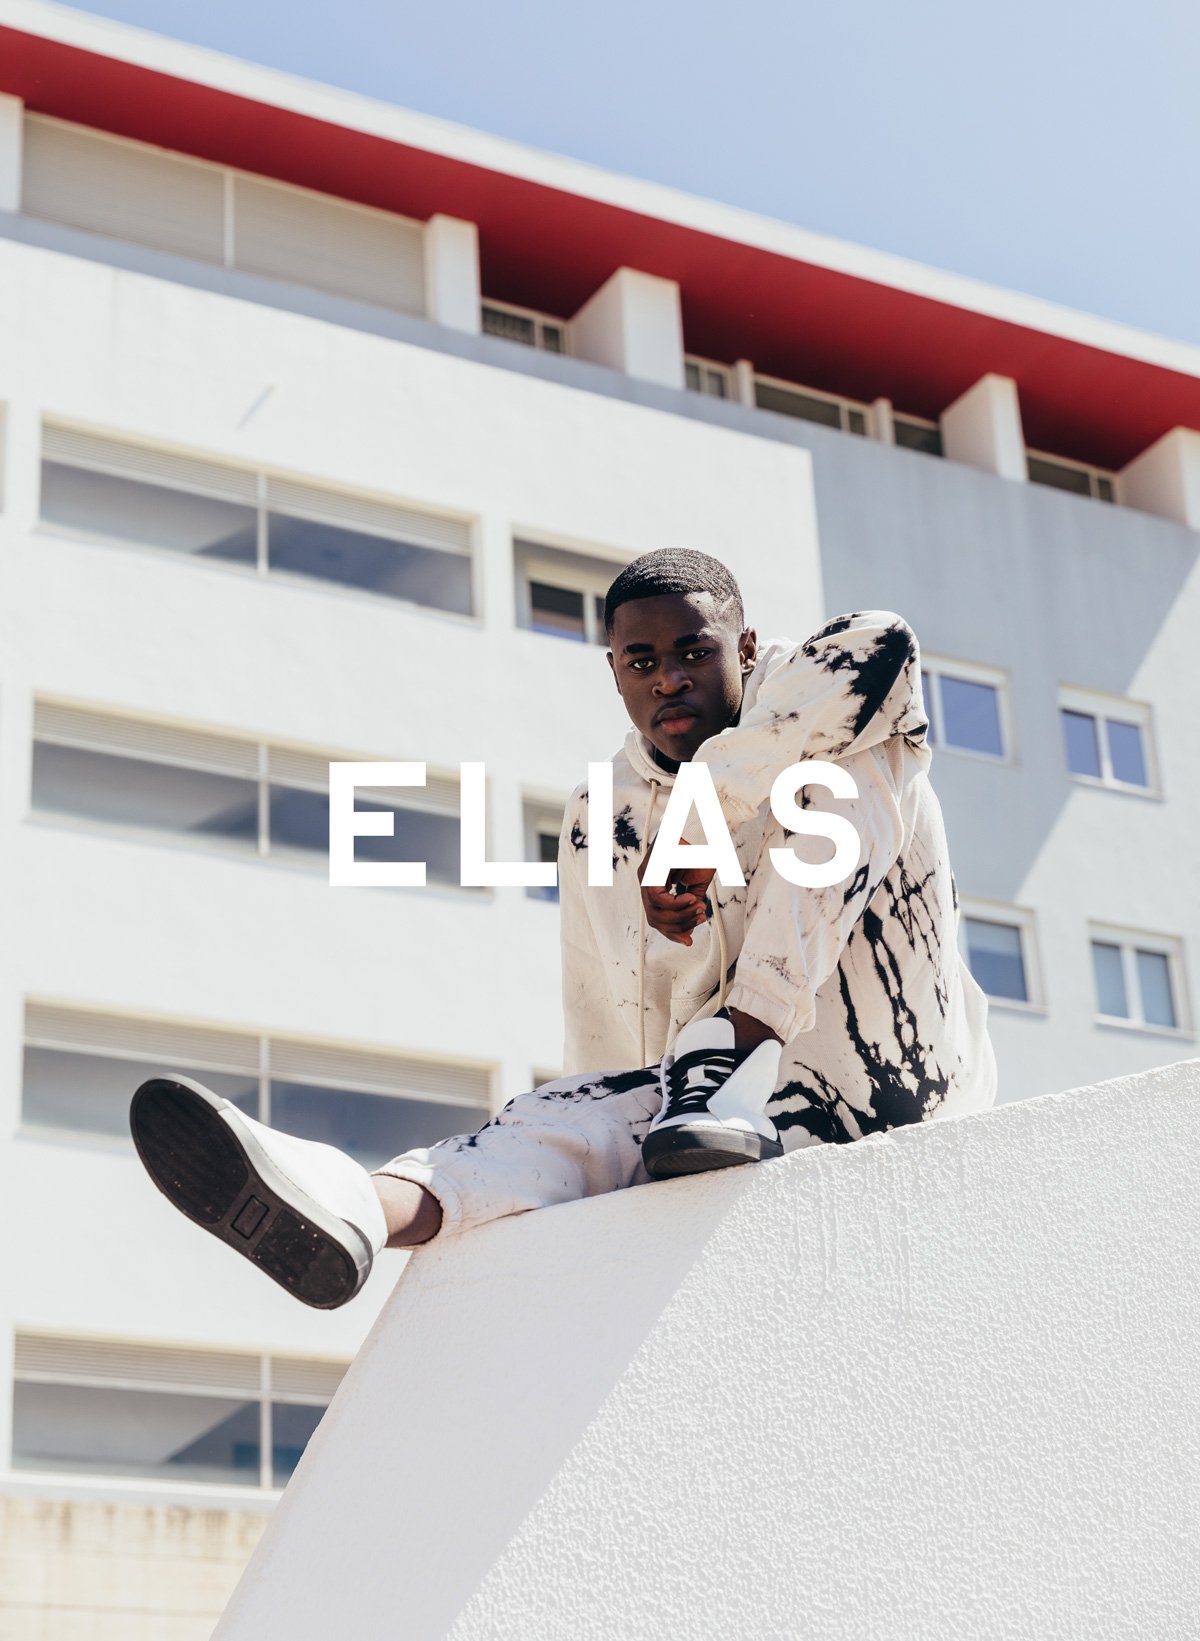 Elias assis sur un mur, portant Diverge sneakers, promouvant l’impact social et les chaussures personnalisées à travers le projet Imagine.